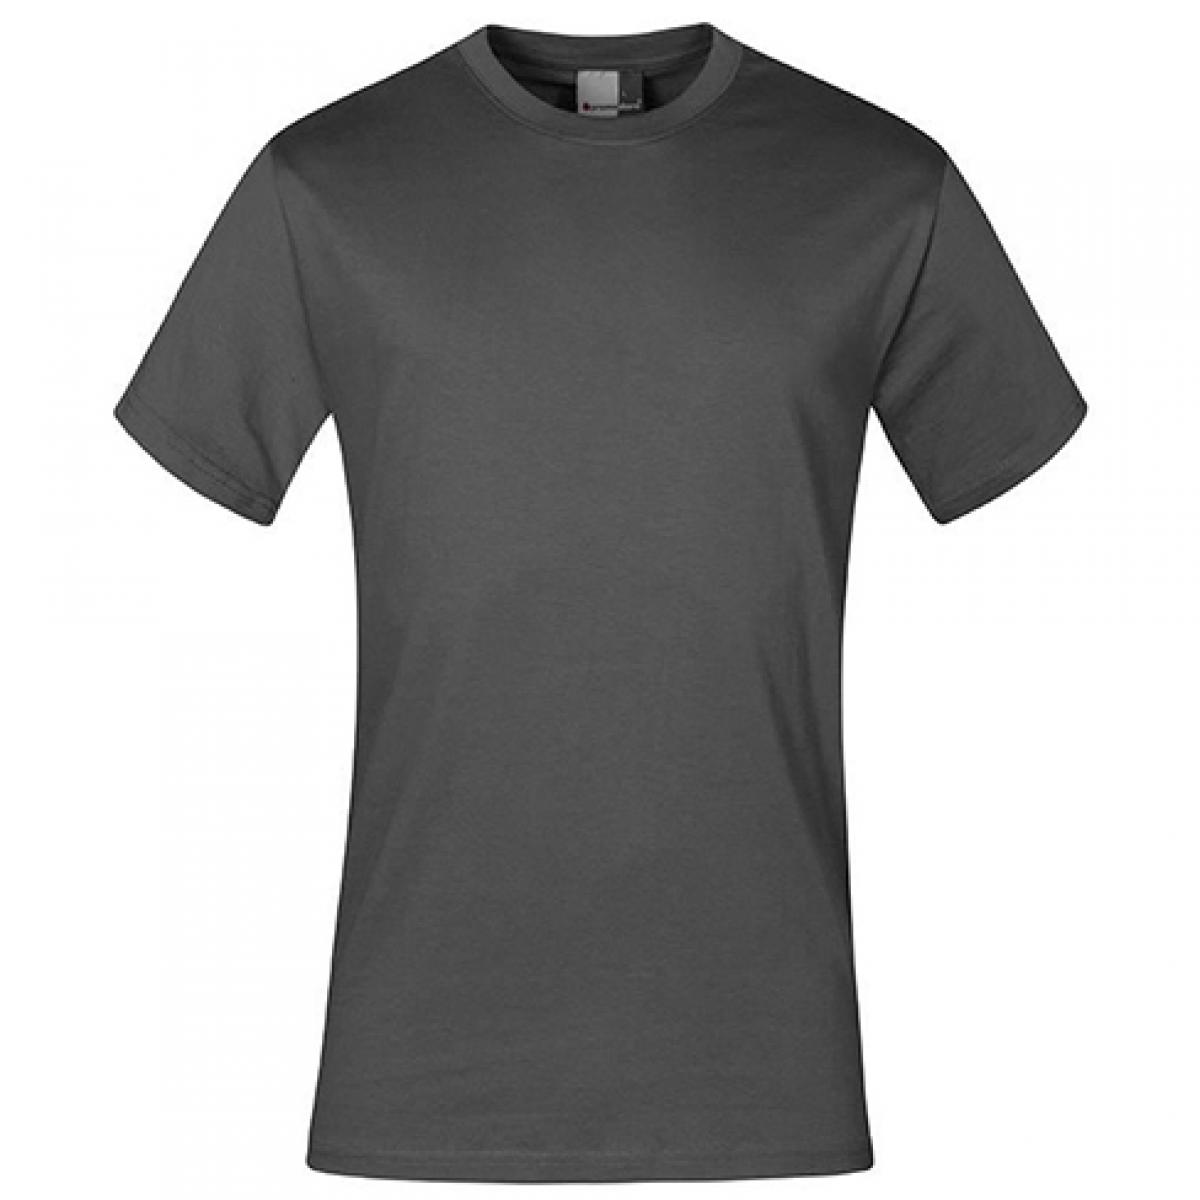 Hersteller: Promodoro Herstellernummer: 3000/3099 Artikelbezeichnung: Men´s Premium Herren T-Shirt - bis 5XL Farbe: Steel Grey (Solid)